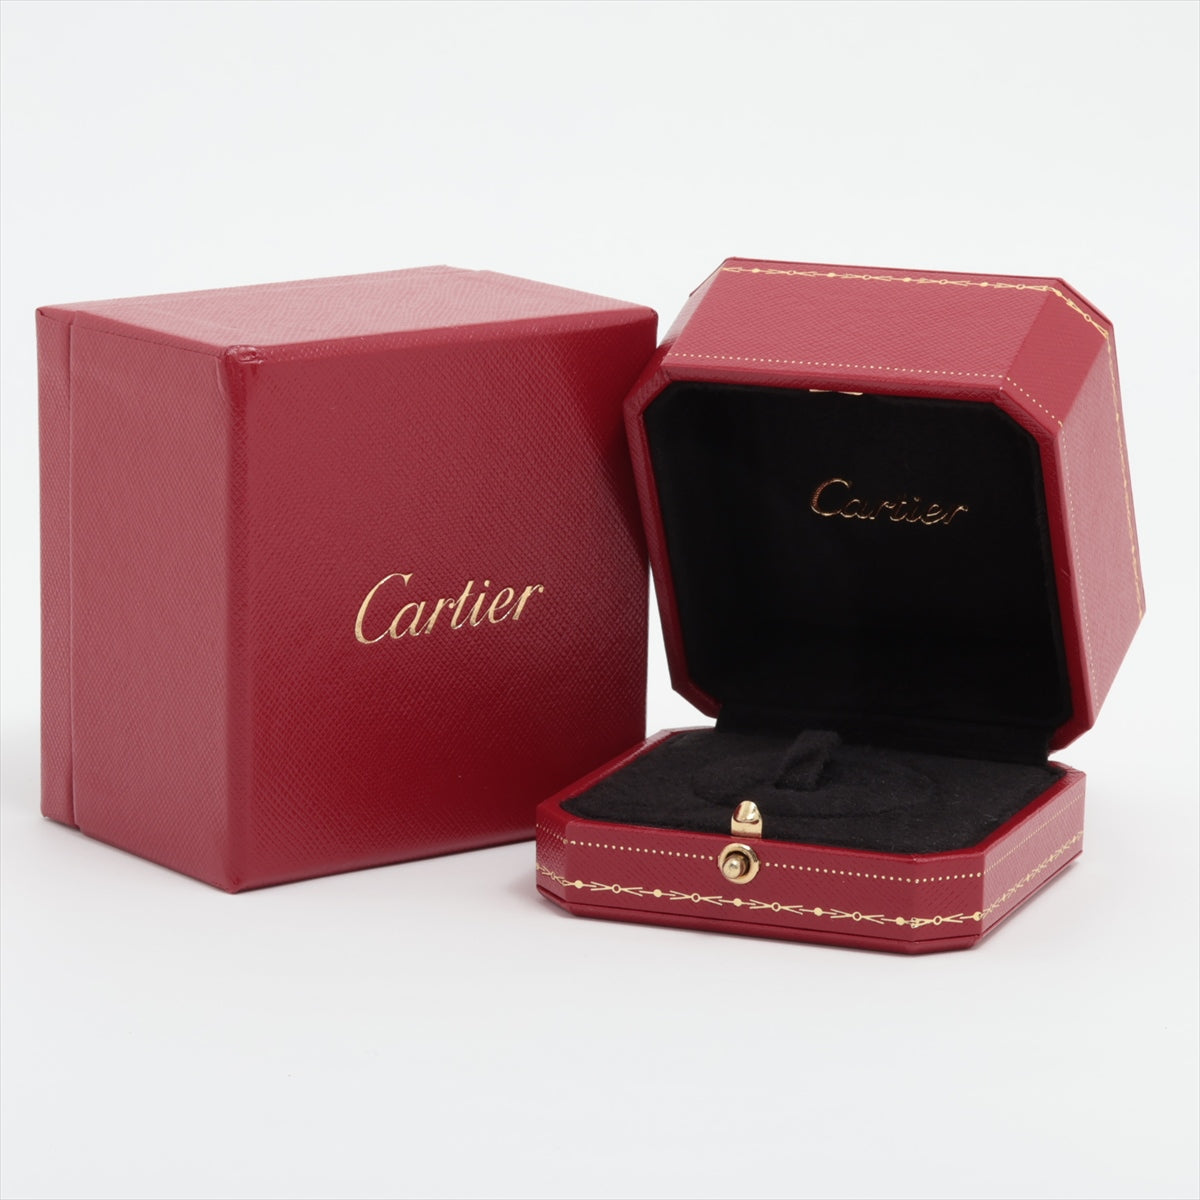 Cartier Be Love full diamond rings 750(PG×WG) 6.1g 47